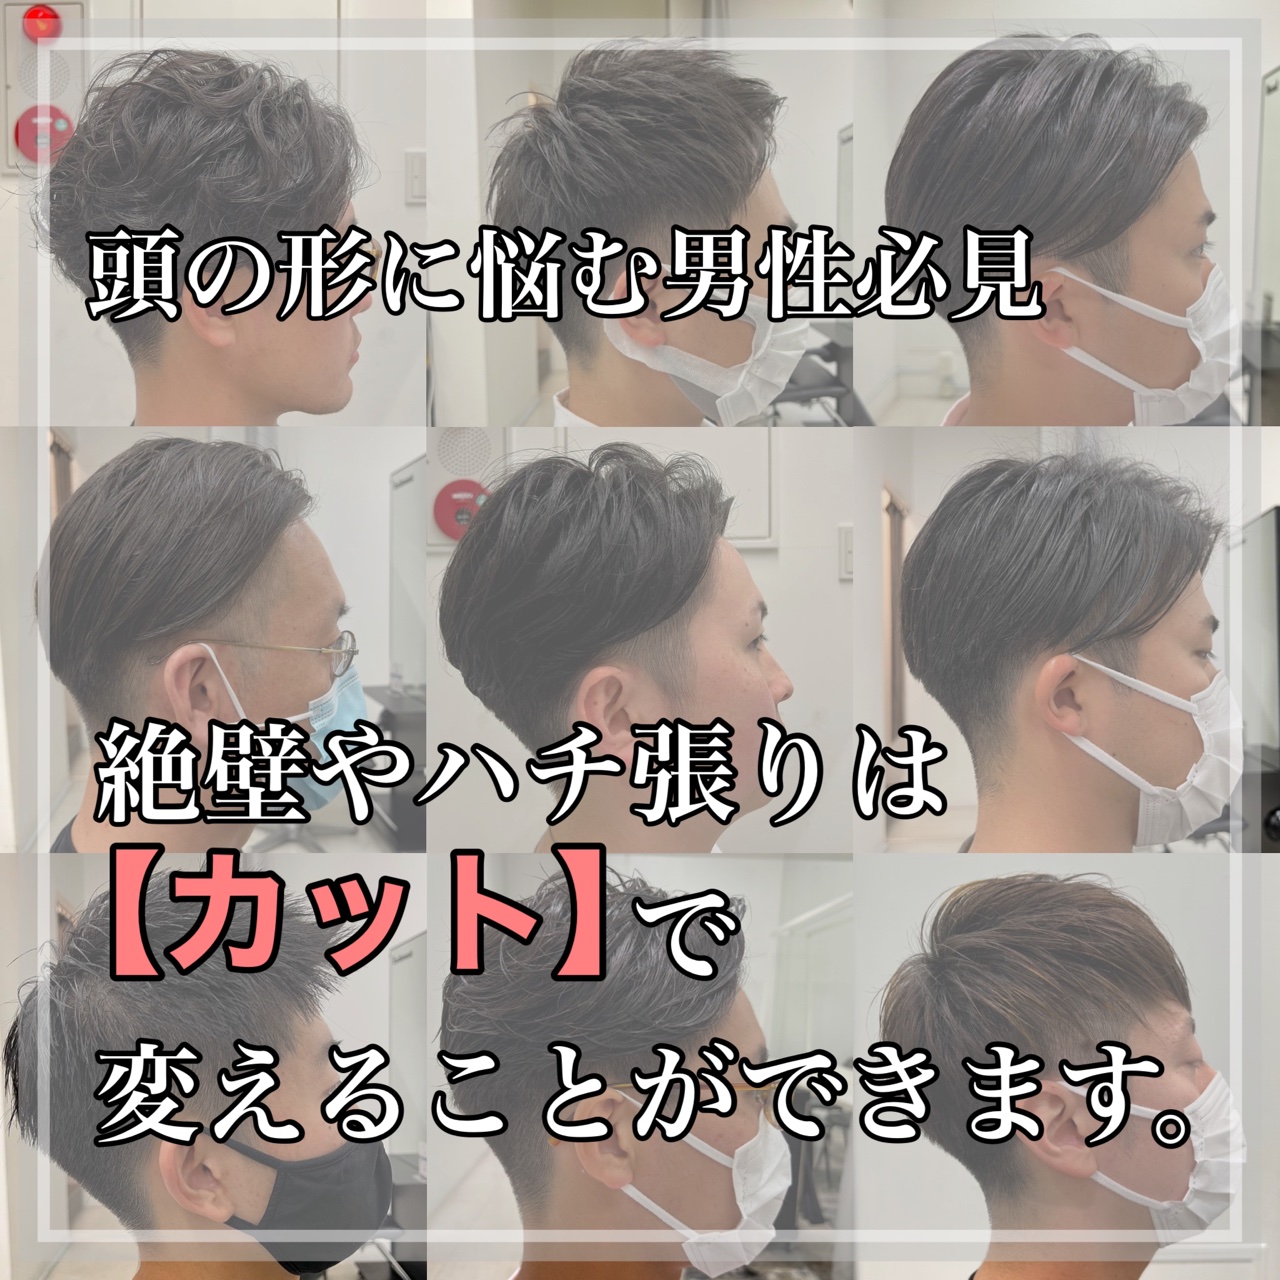 頭の形が悪いと悩むメンズは必見 絶壁とハチ張りは髪型でカバー可能 Ryohei Kato